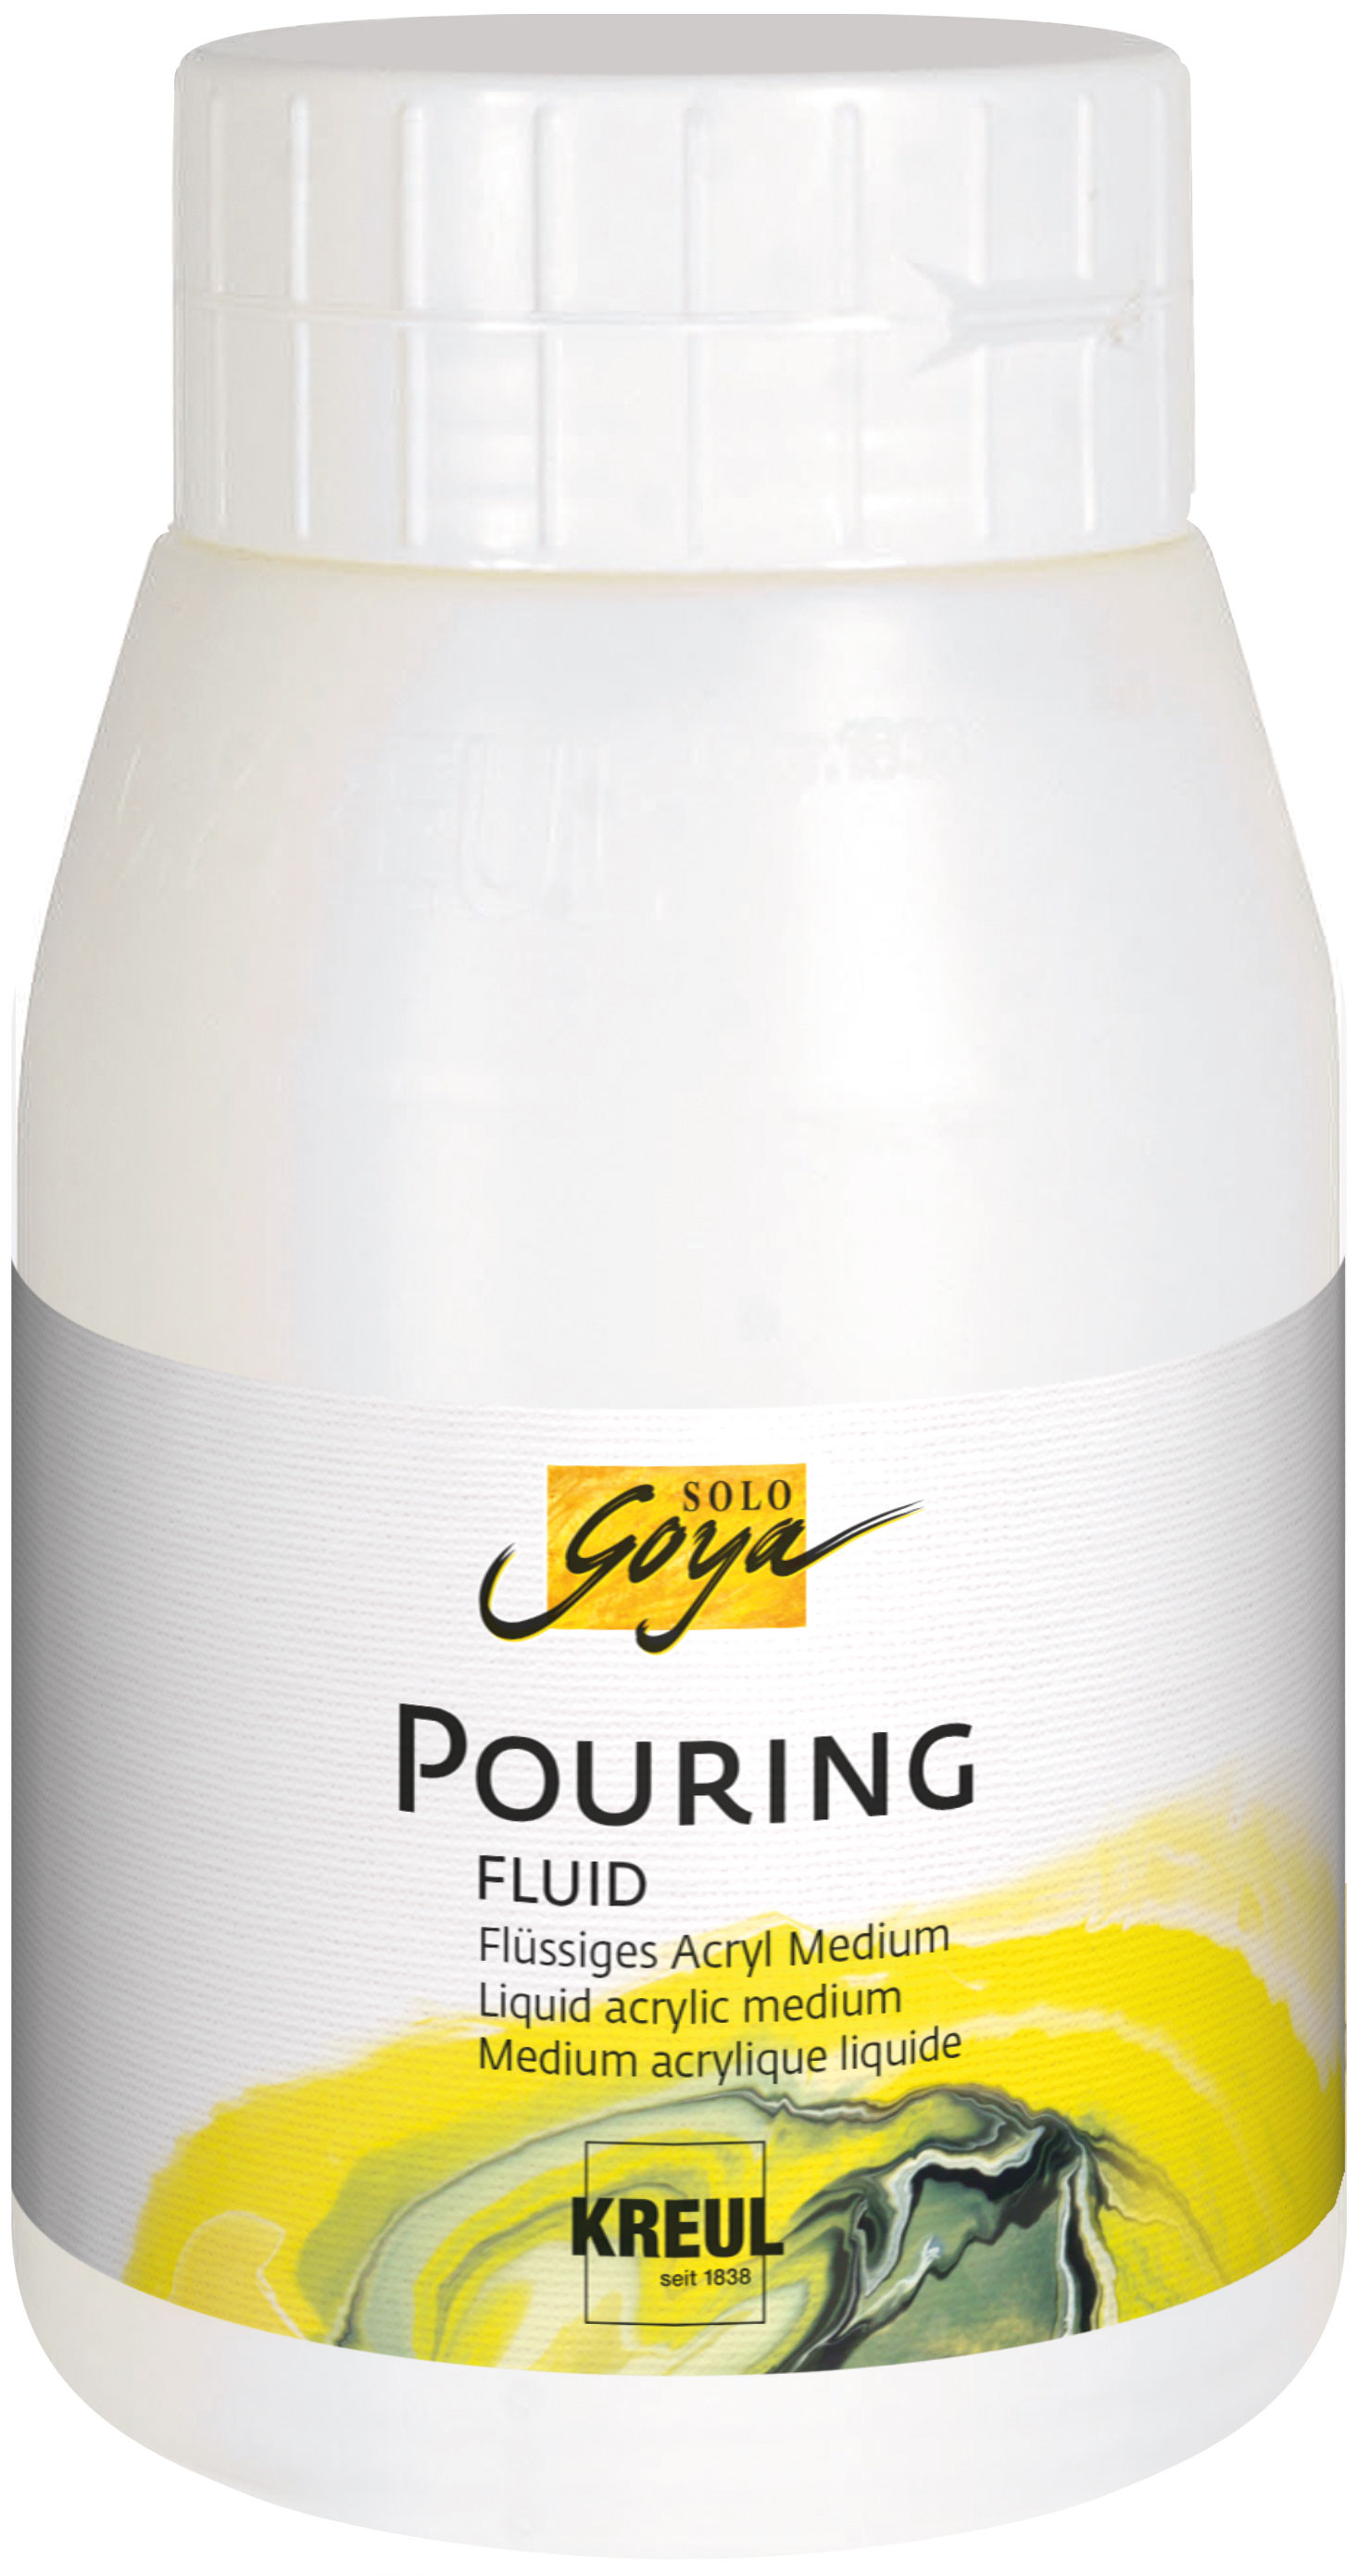 KREUL Solo Goya Pouring - Fluid 500 ml